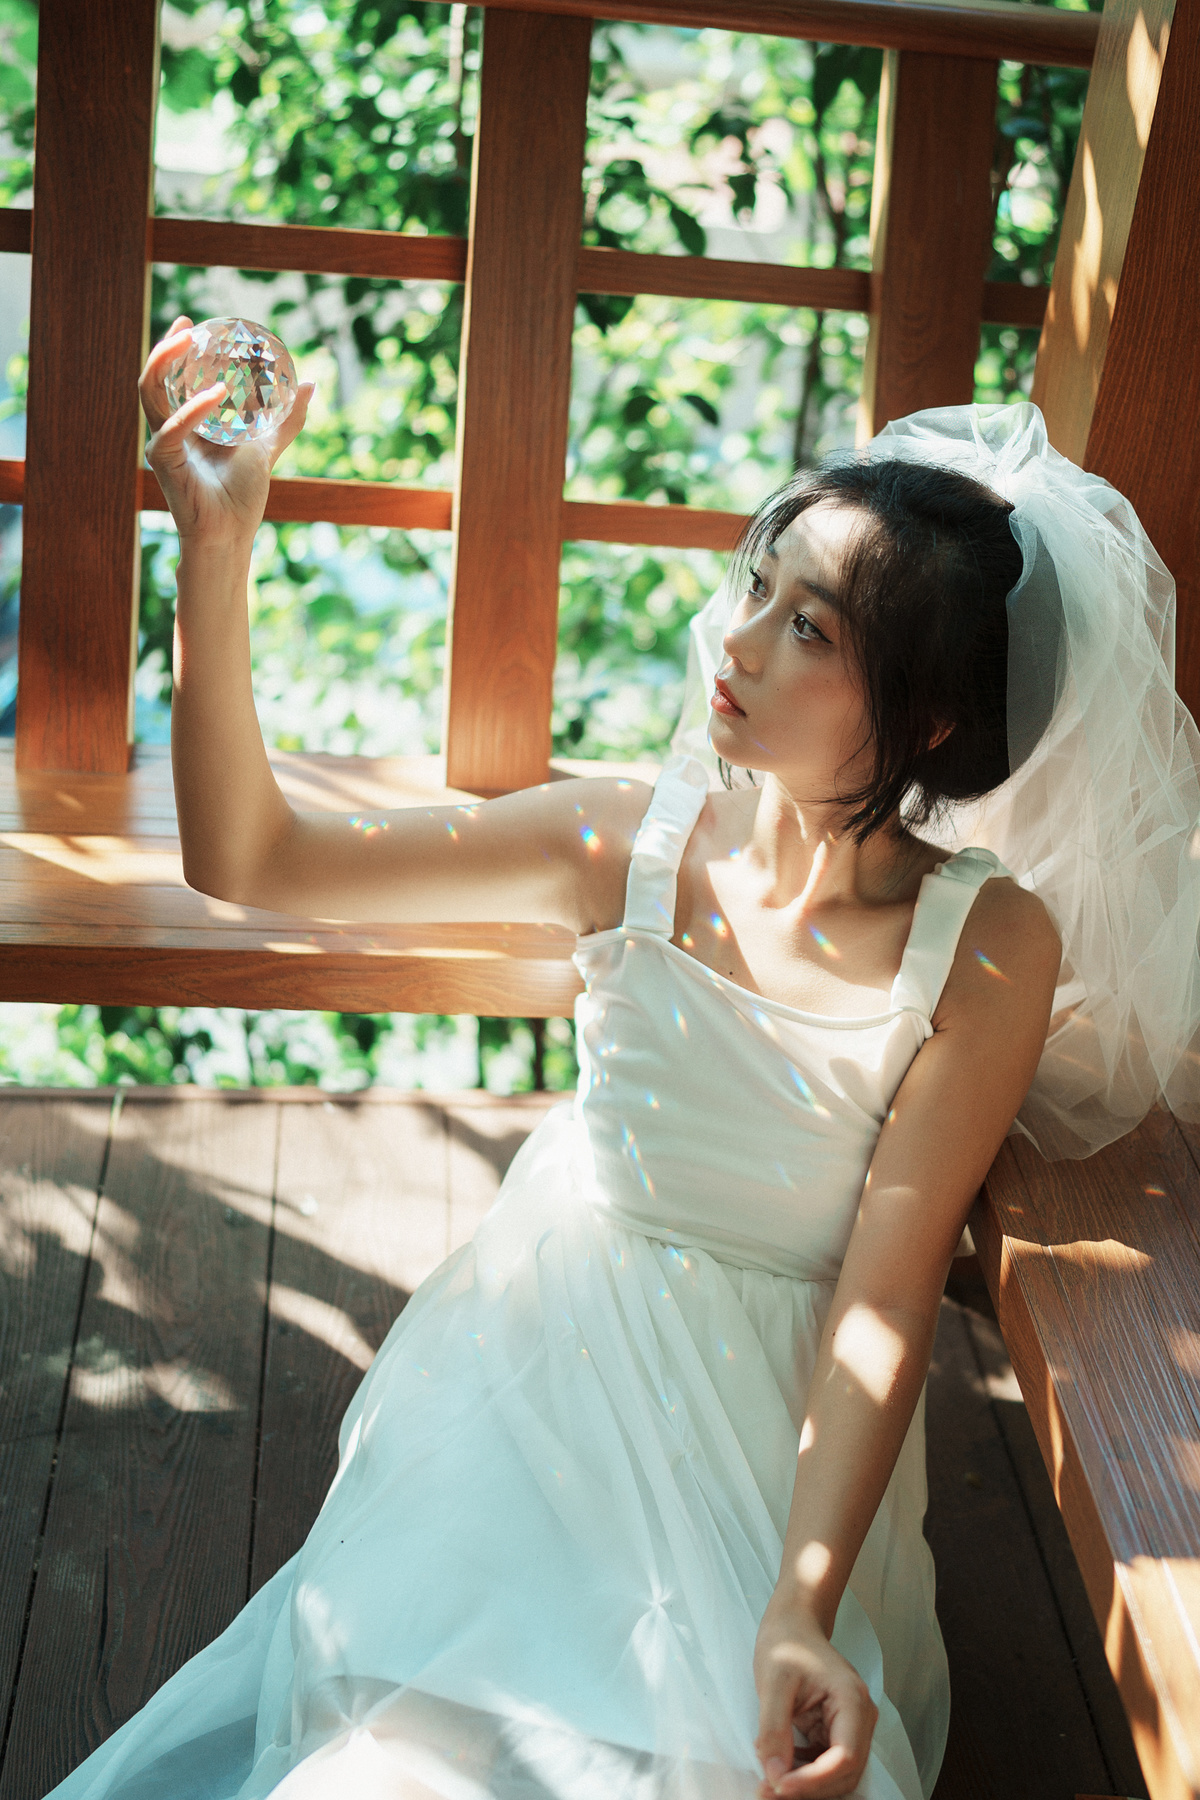 一个穿着白色连衣裙的年轻女子坐在木凳上 手里拿着一杯水。